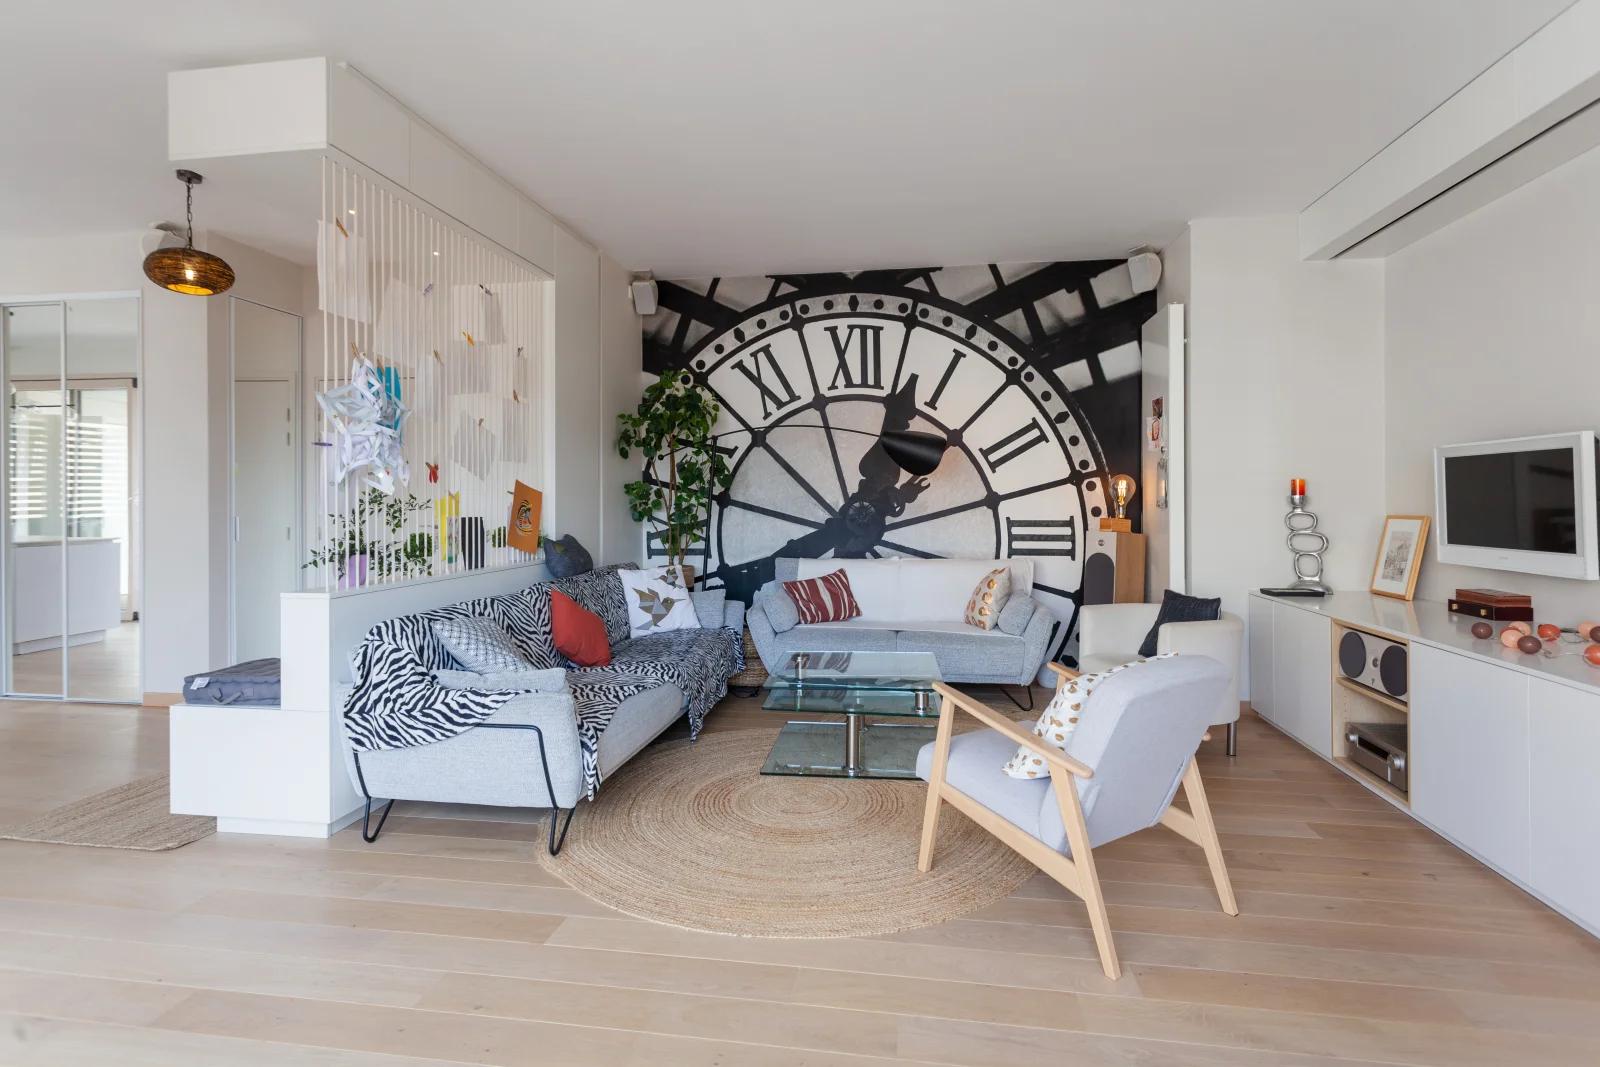 Living room in Appart. design bay window video-proj terrace - 1